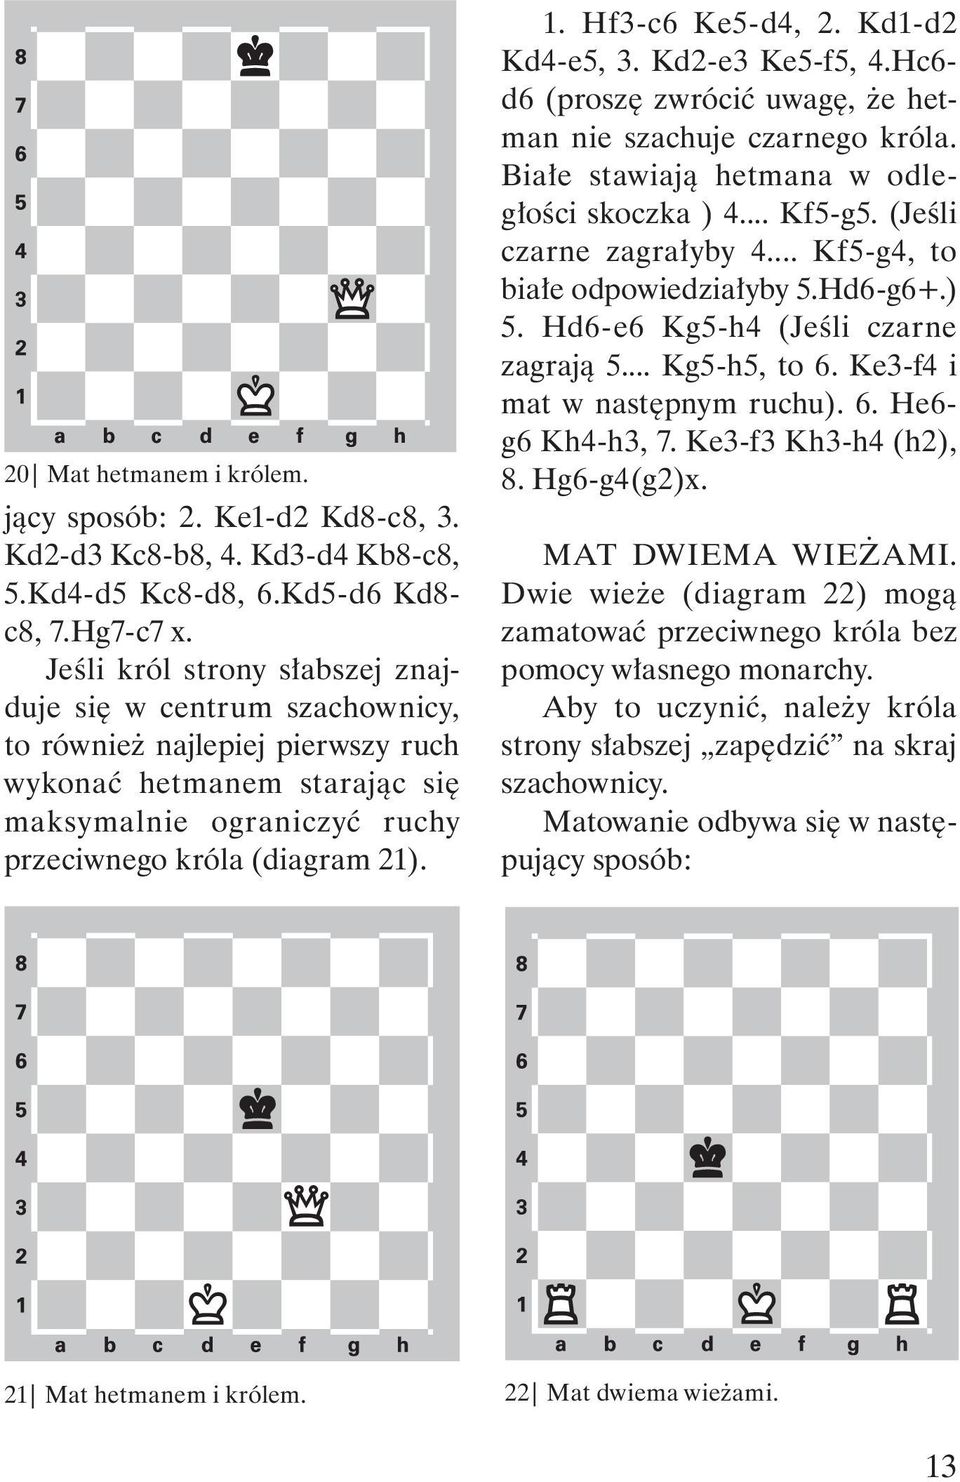 Hf3-c6 Ke5-d4, 2. Kd1-d2 Kd4-e5, 3. Kd2-e3 Ke5-f5, 4.Hc6- d6 (proszę zwrócić uwagę, że hetman nie szachuje czarnego króla. Białe stawiają hetmana w odległości skoczka ) 4... Kf5-g5.